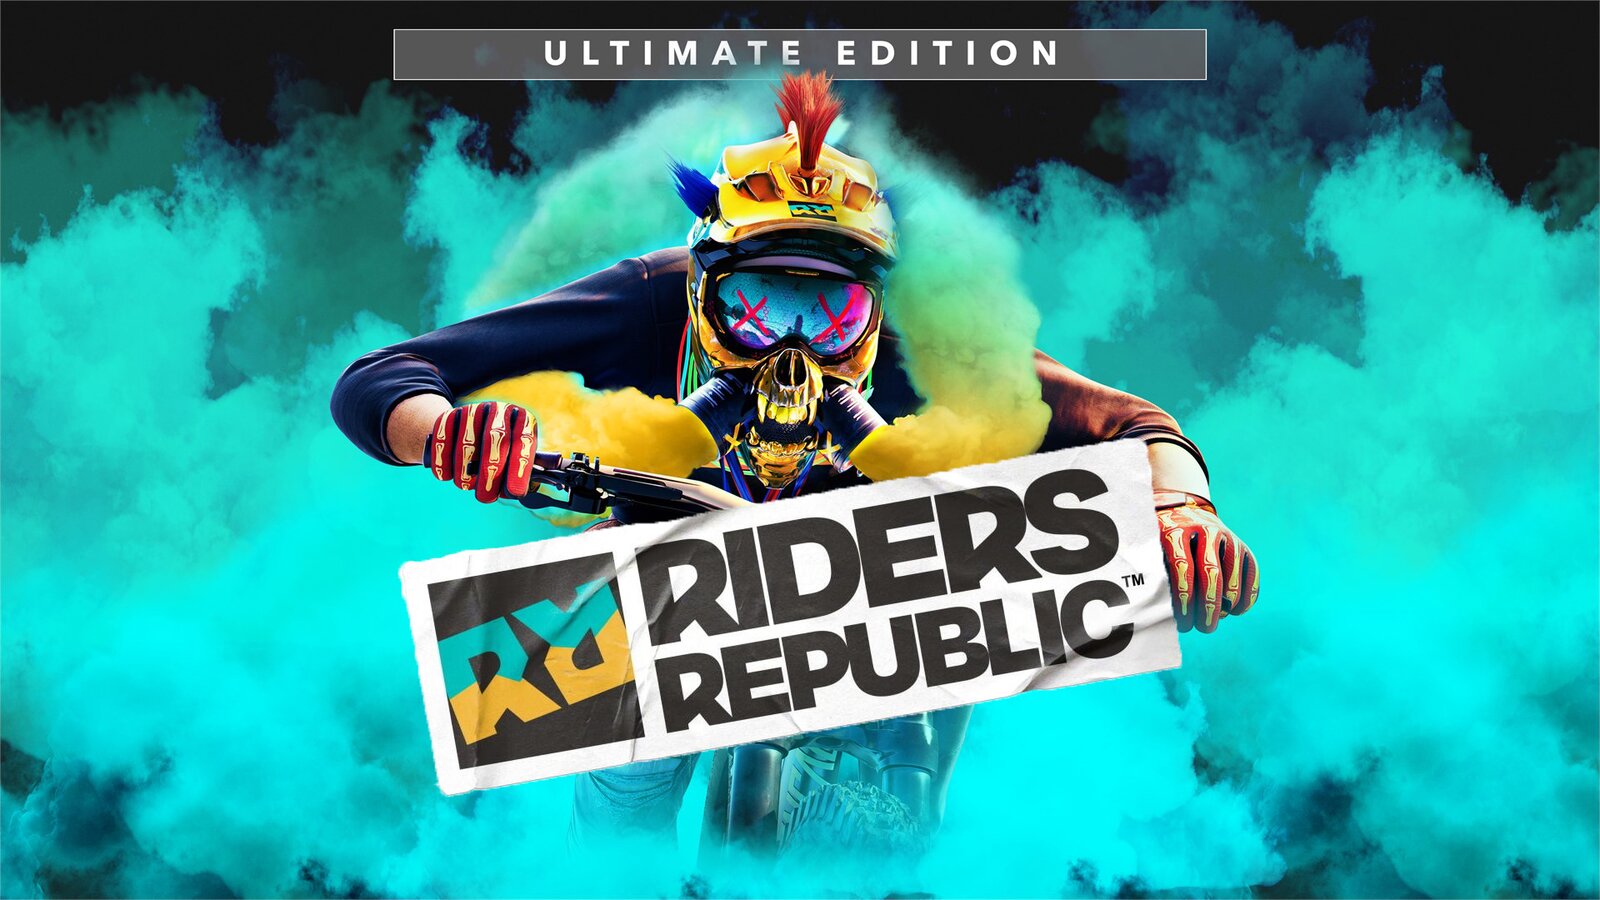 Riders Republic - Ultimate Edition